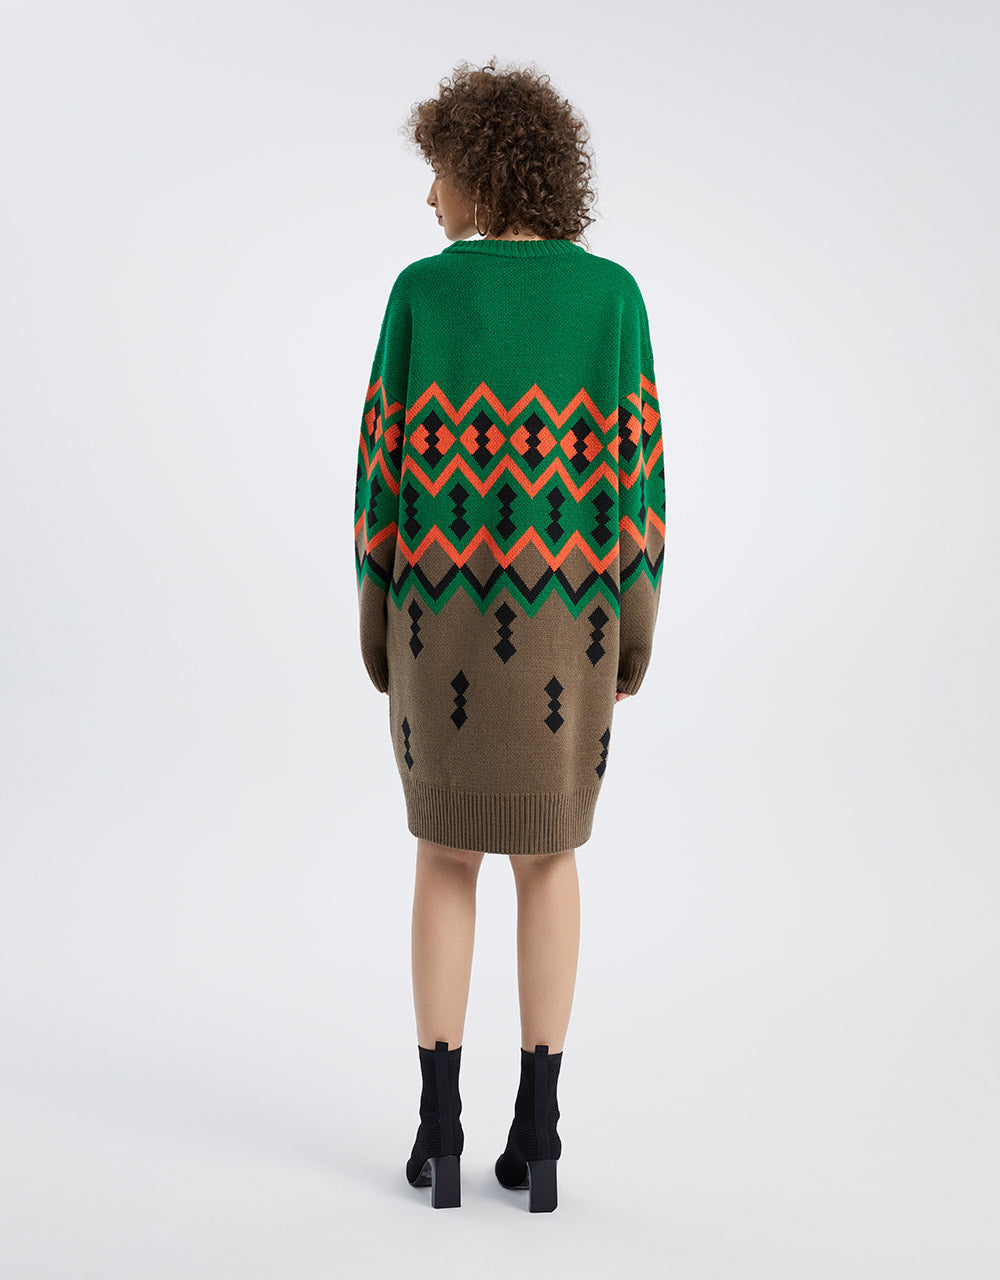 지오 패턴 스웨터 드레스